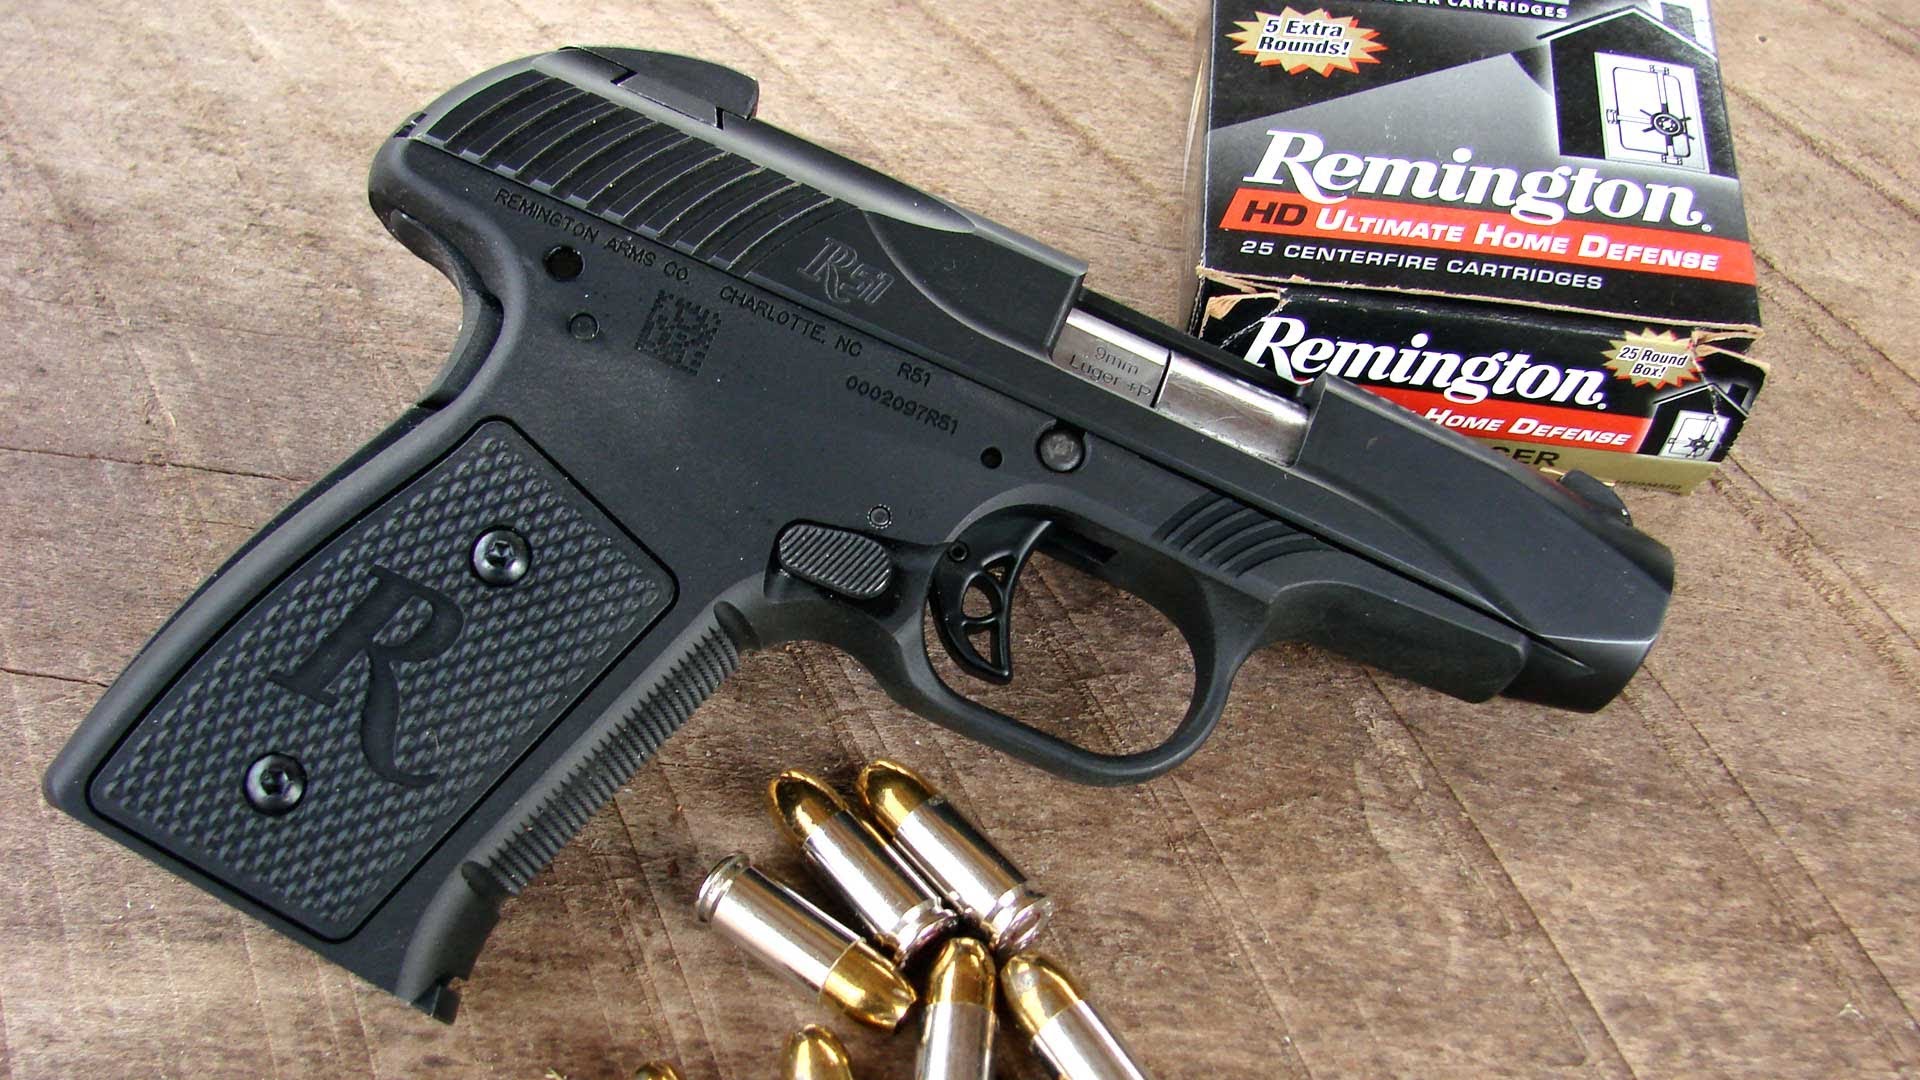 Amazing Remington Pistol Pictures & Backgrounds